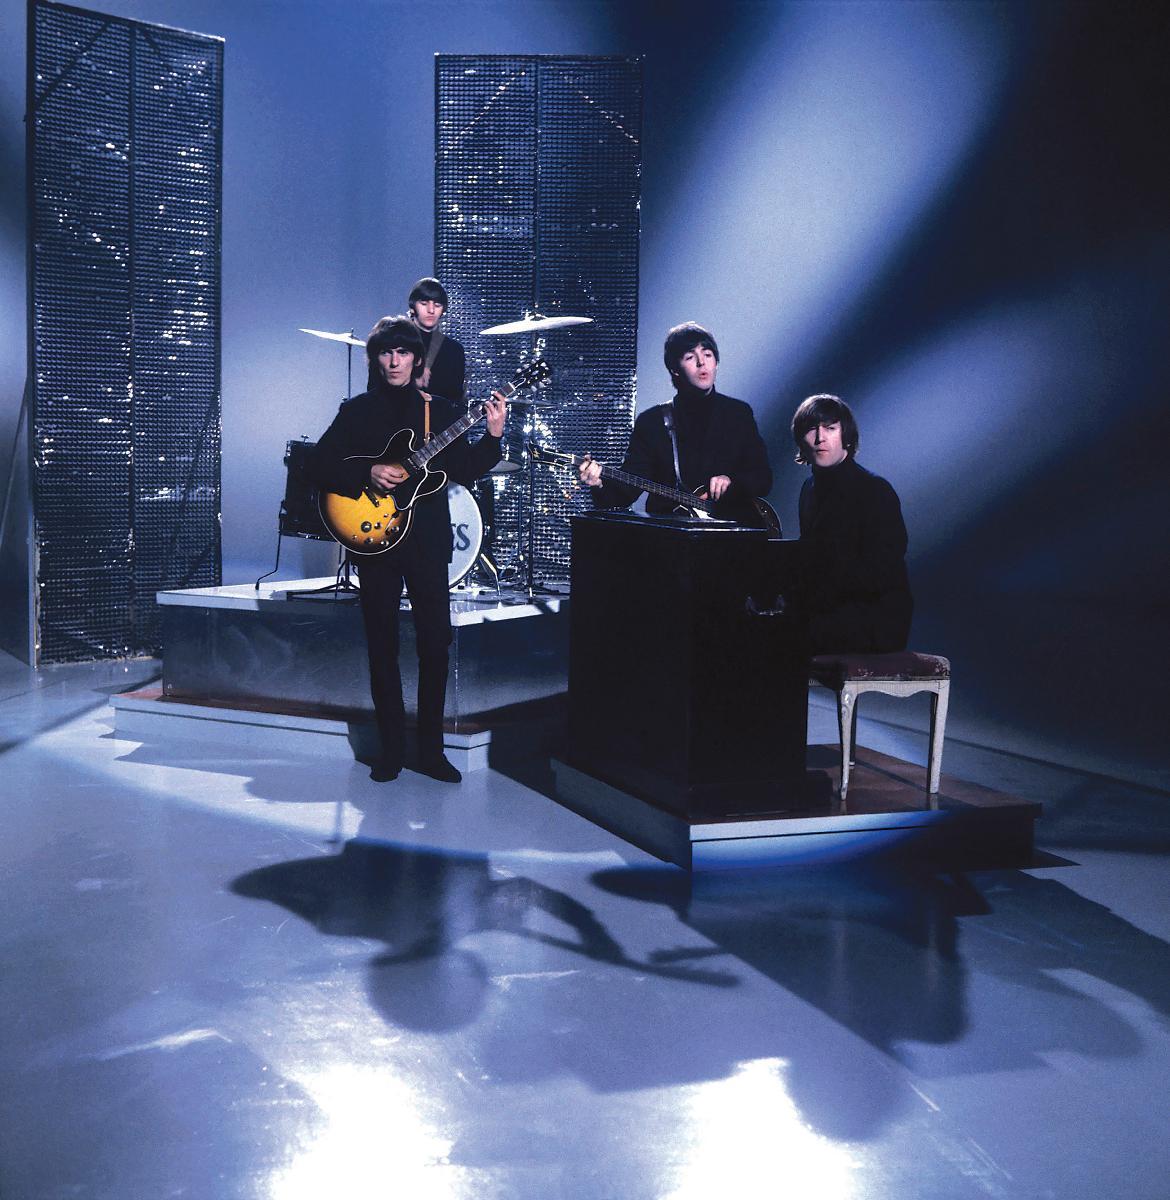 I början av karriären uppträdde The Beatles flitigt i olika tv-program, här med John Lennon på keyboard.